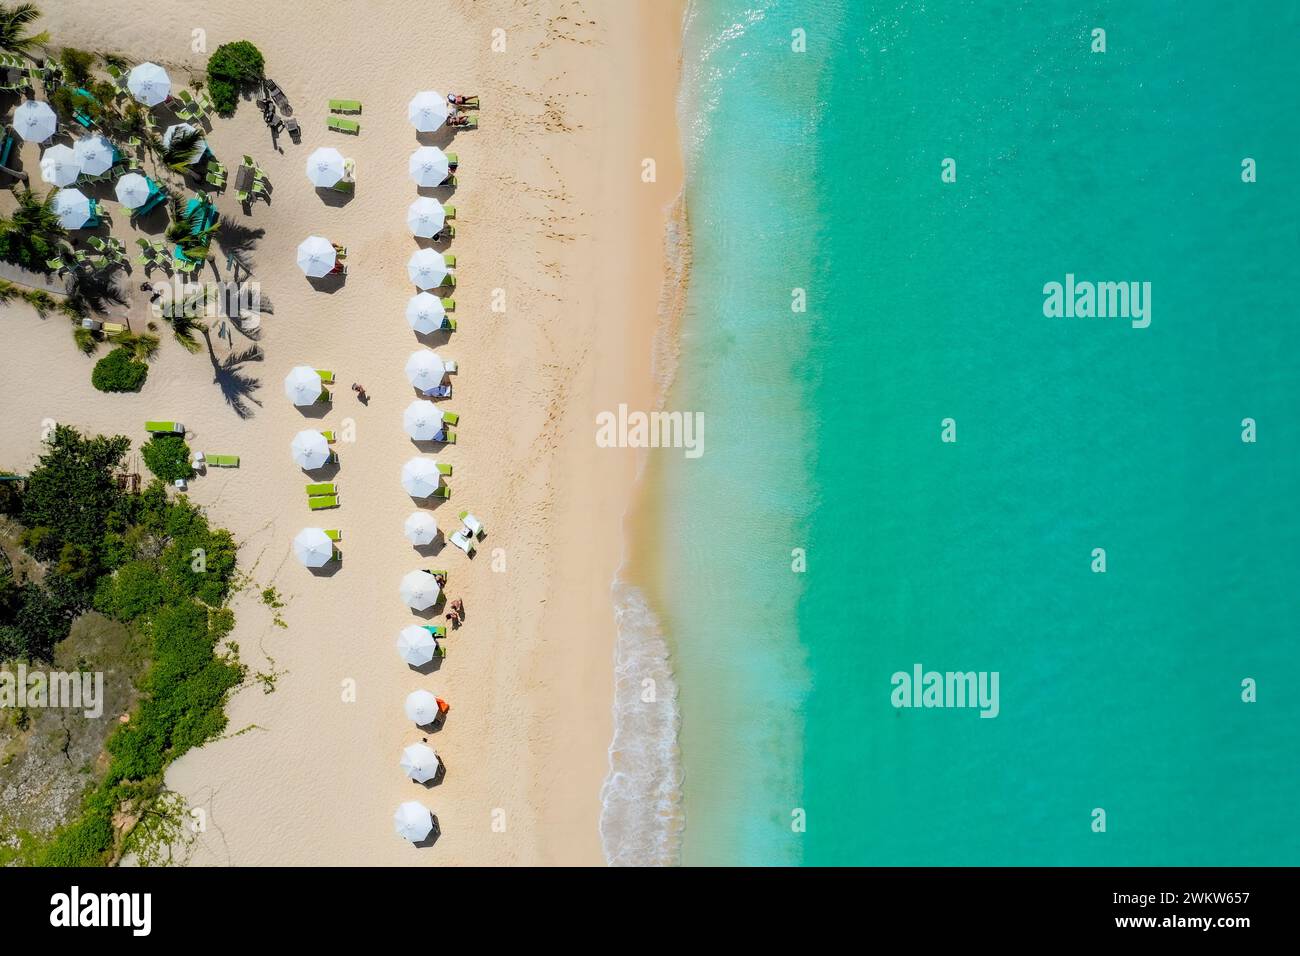 Fotografia aerea che cattura la bellezza di Anguilla. L'immagine mostra ombrelloni colorati che punteggiano le sabbie bianche incontaminate, il turchese wat Foto Stock